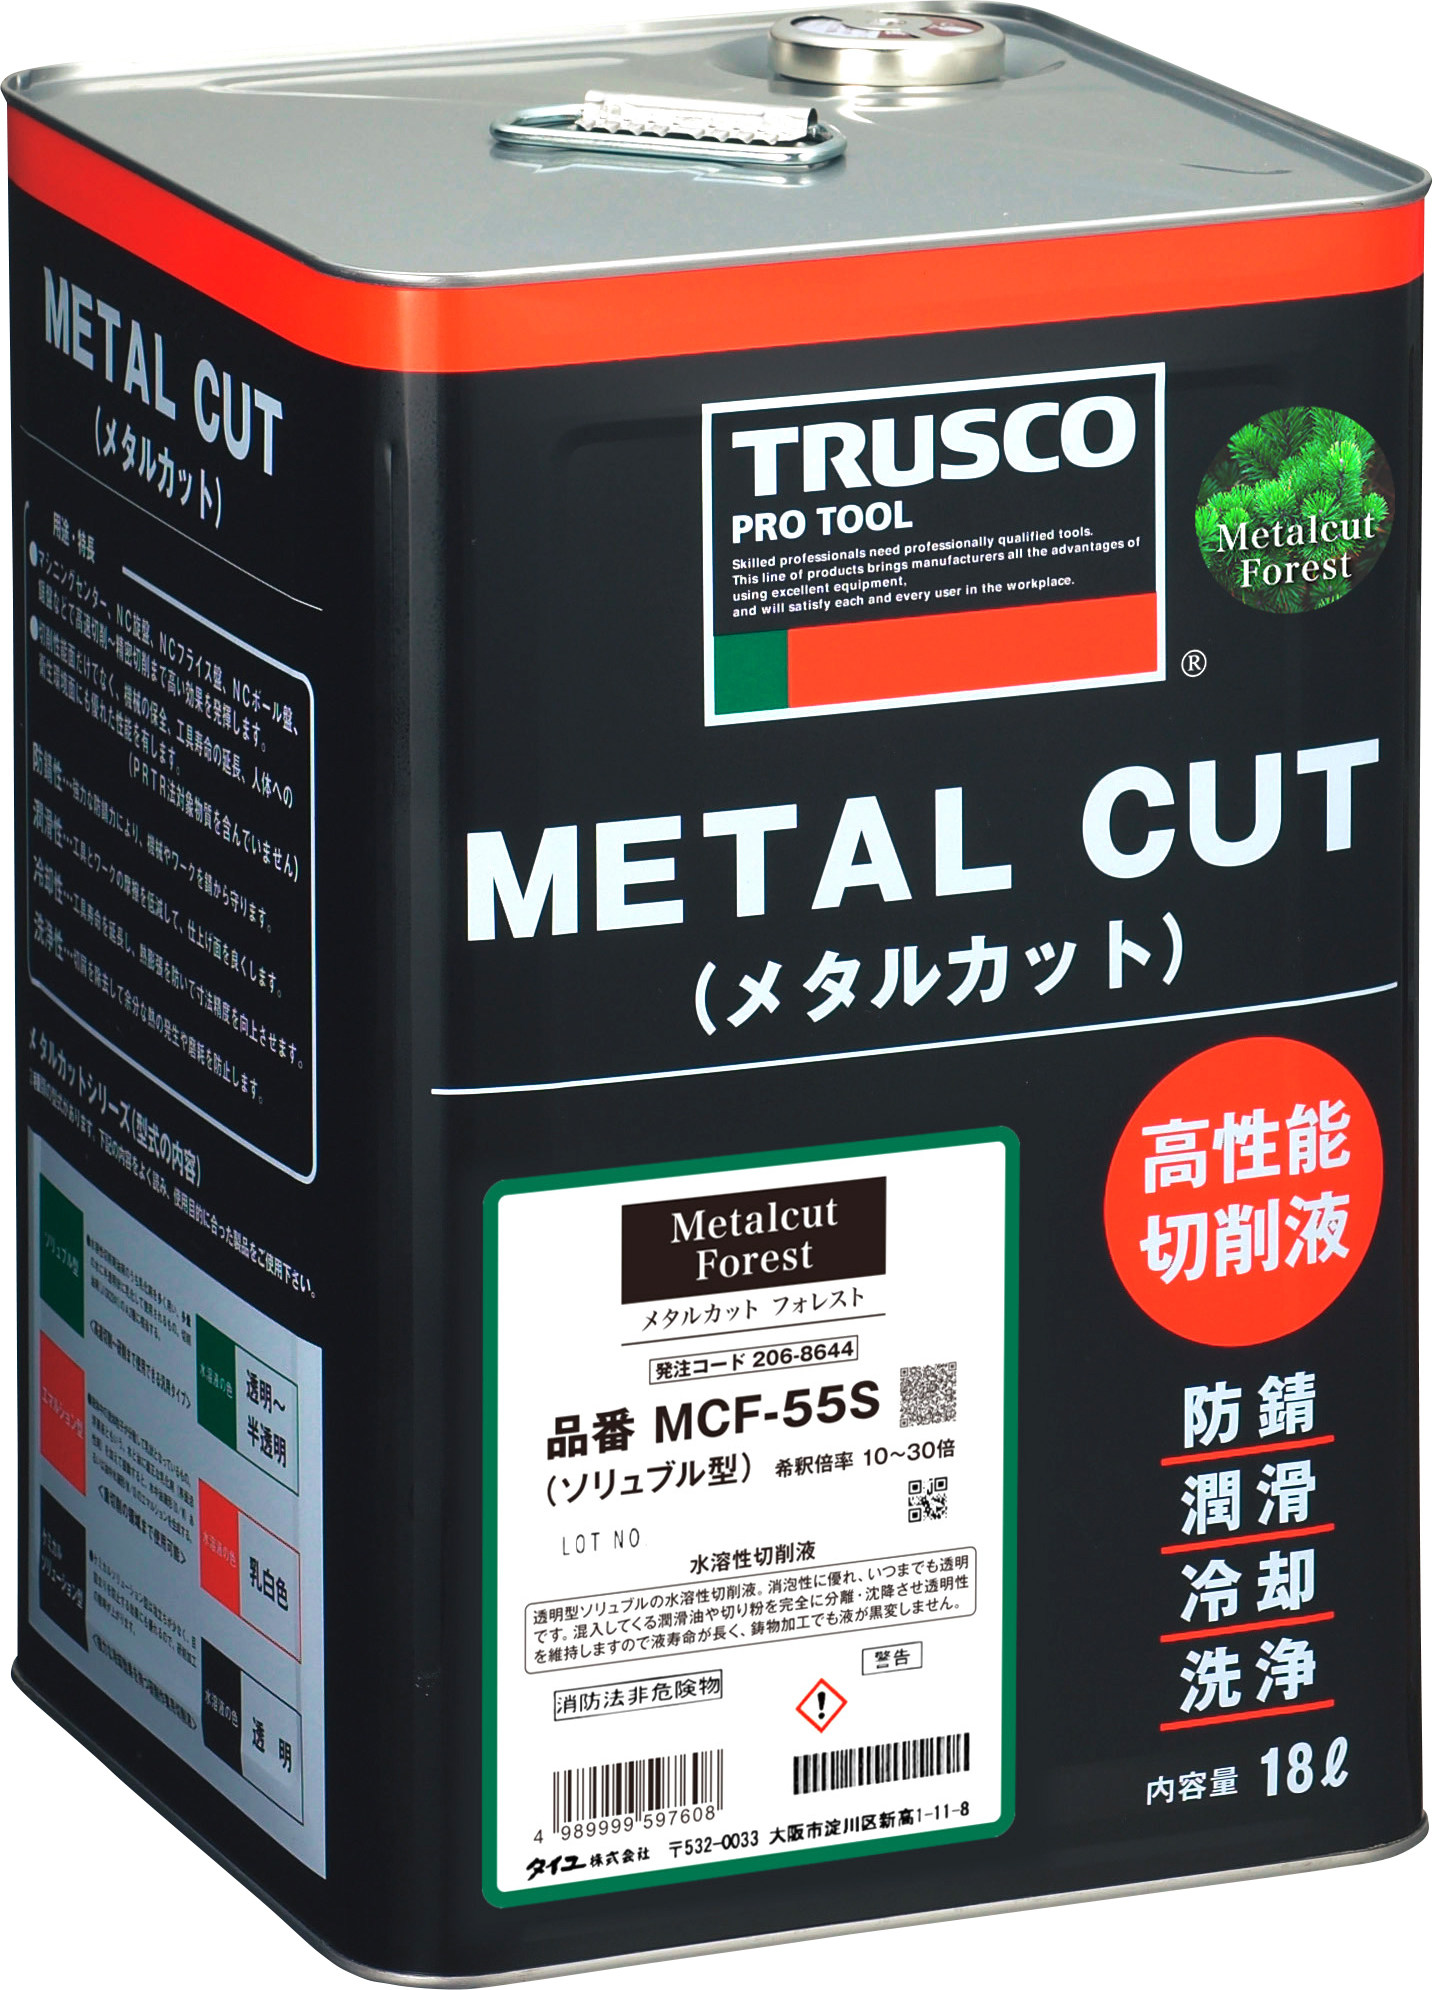 TRUSCO メタルカット ソリュブル高圧対応型 18L ▽286-8211 MC-57S (ソリュブルガタ) 1缶 通販 